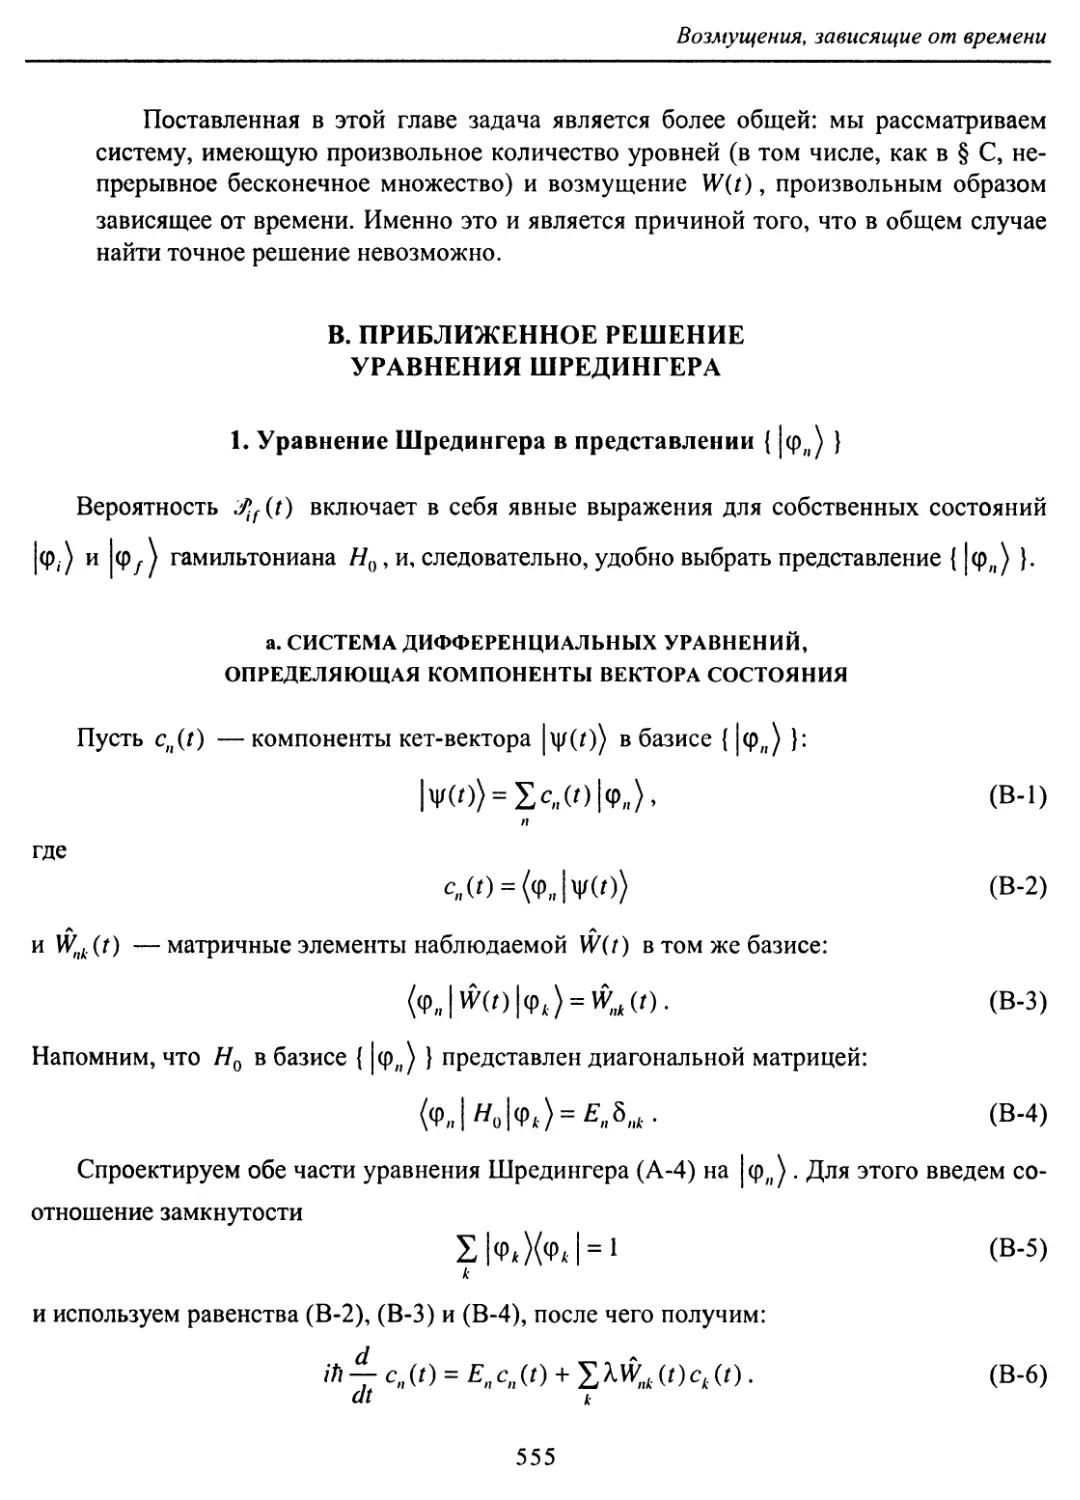 B. Приближенное решение уравнения Шредингера